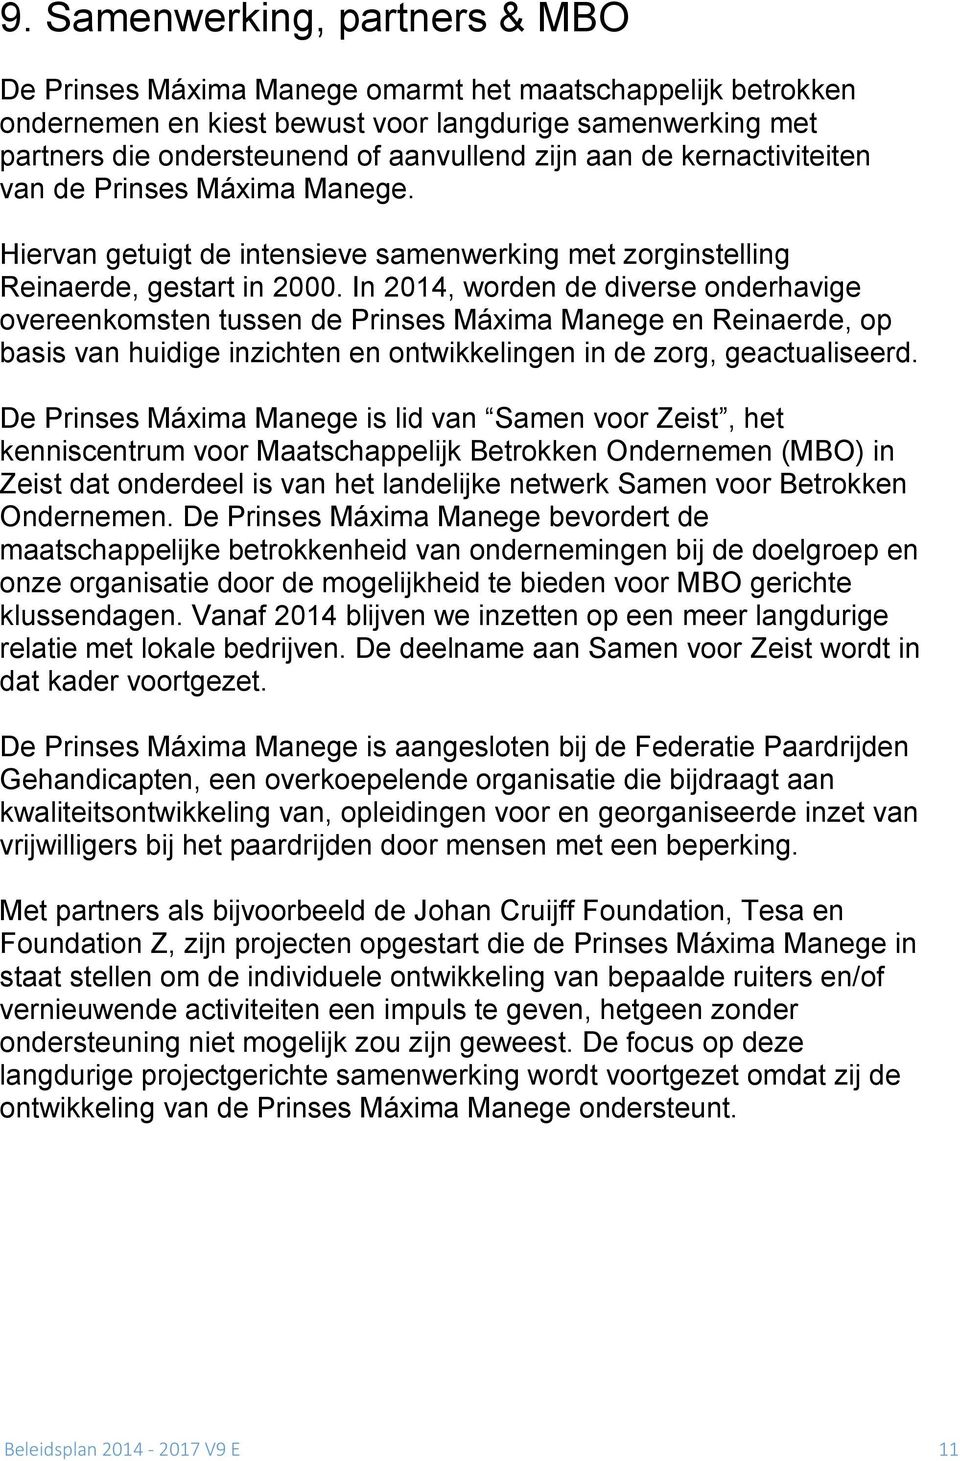 In 2014, worden de diverse onderhavige overeenkomsten tussen de Prinses Máxima Manege en Reinaerde, op basis van huidige inzichten en ontwikkelingen in de zorg, geactualiseerd.